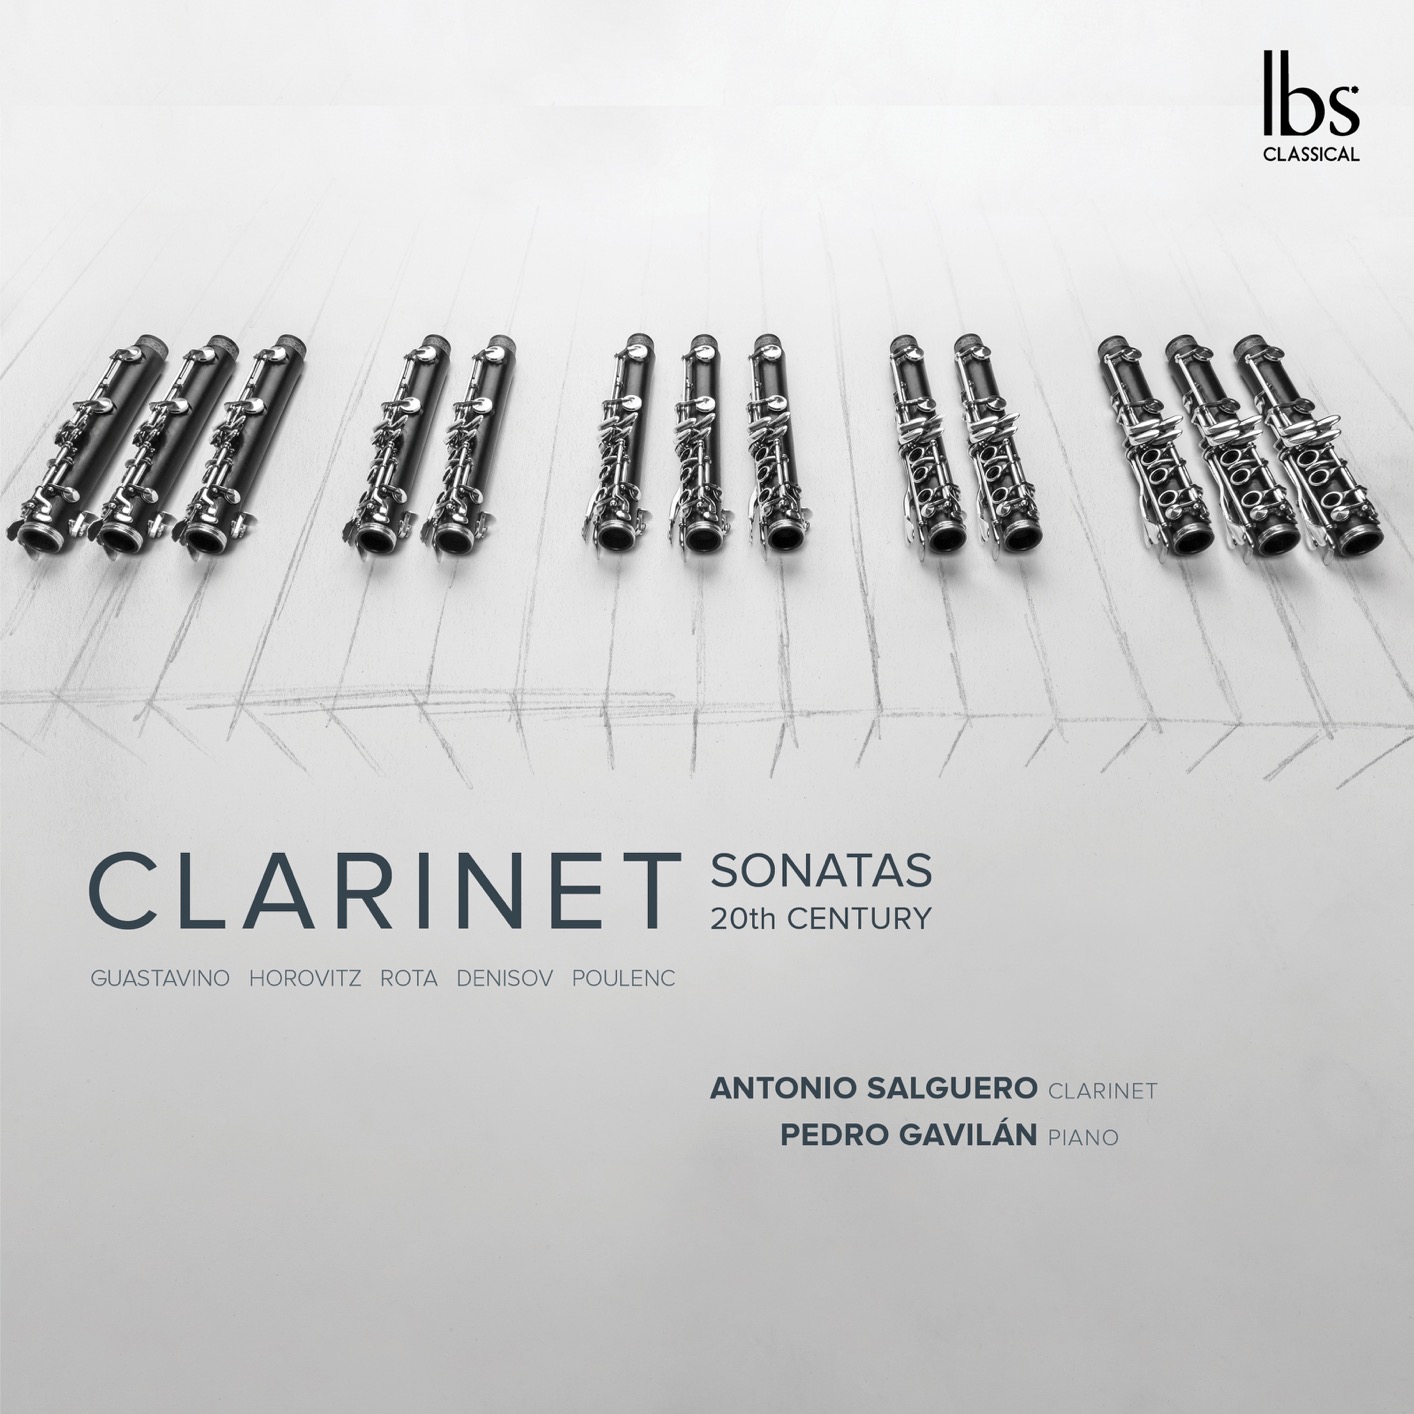 Antonio Salguero & Pedro Gavilan - Clarinet Sonatas 20th Century (2018) [FLAC 24bit/96kHz]